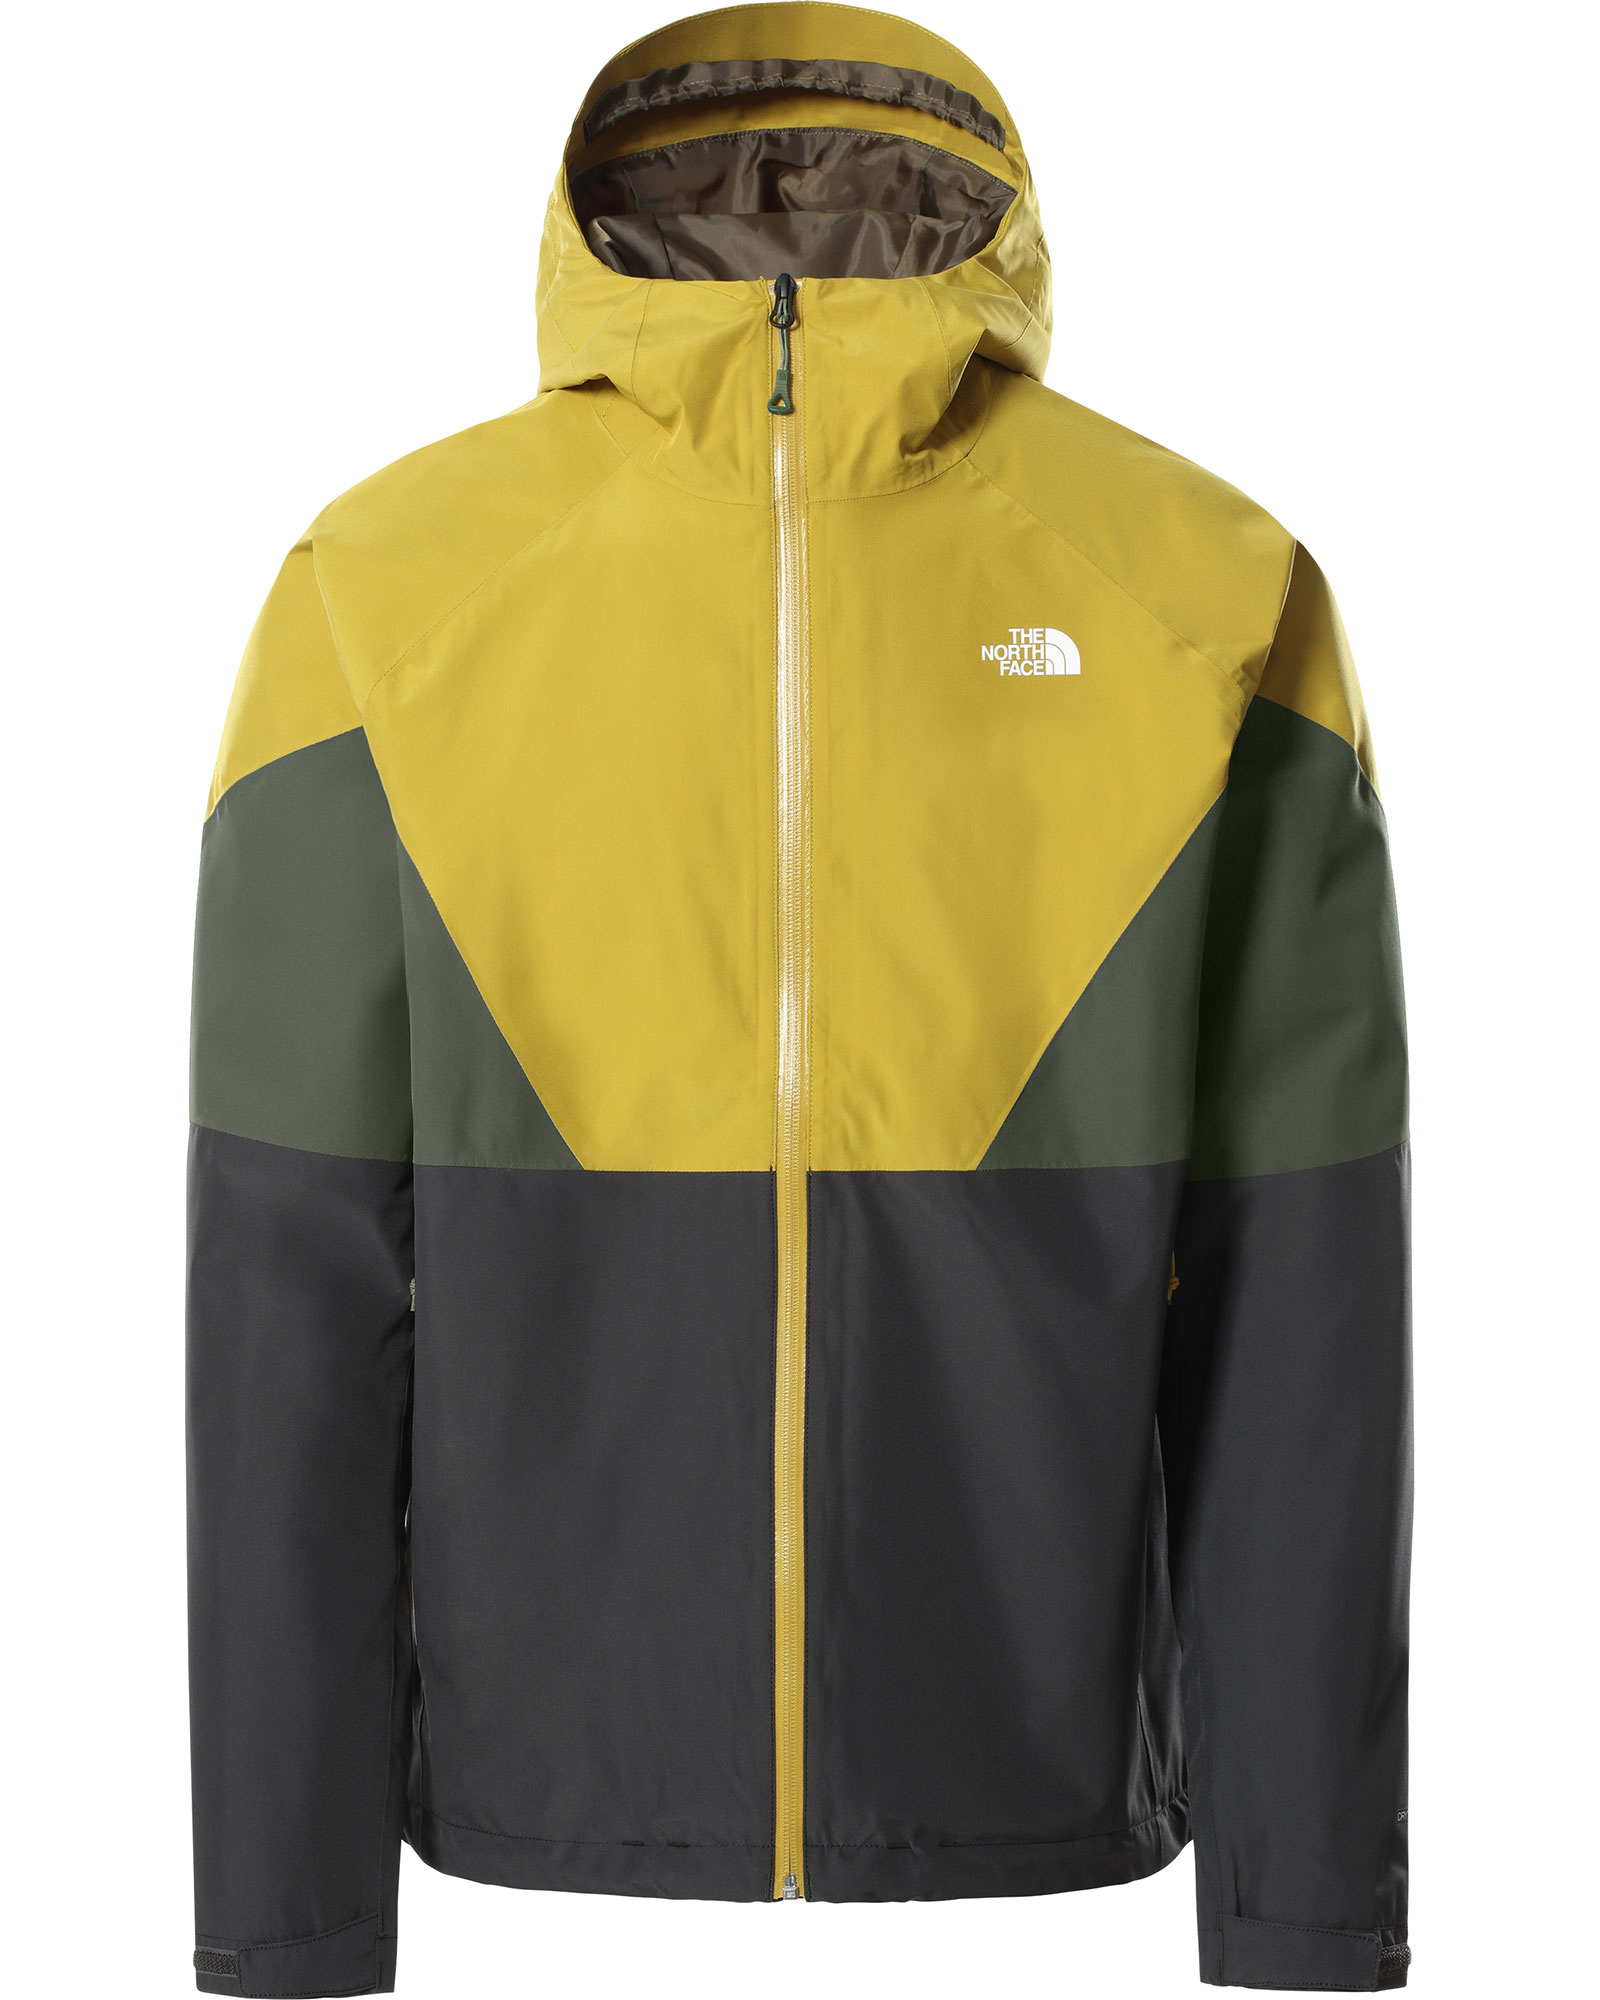 The North Face Lightning Men’s Jacket - Asphalt Grey/Arrowood Yellow XXL